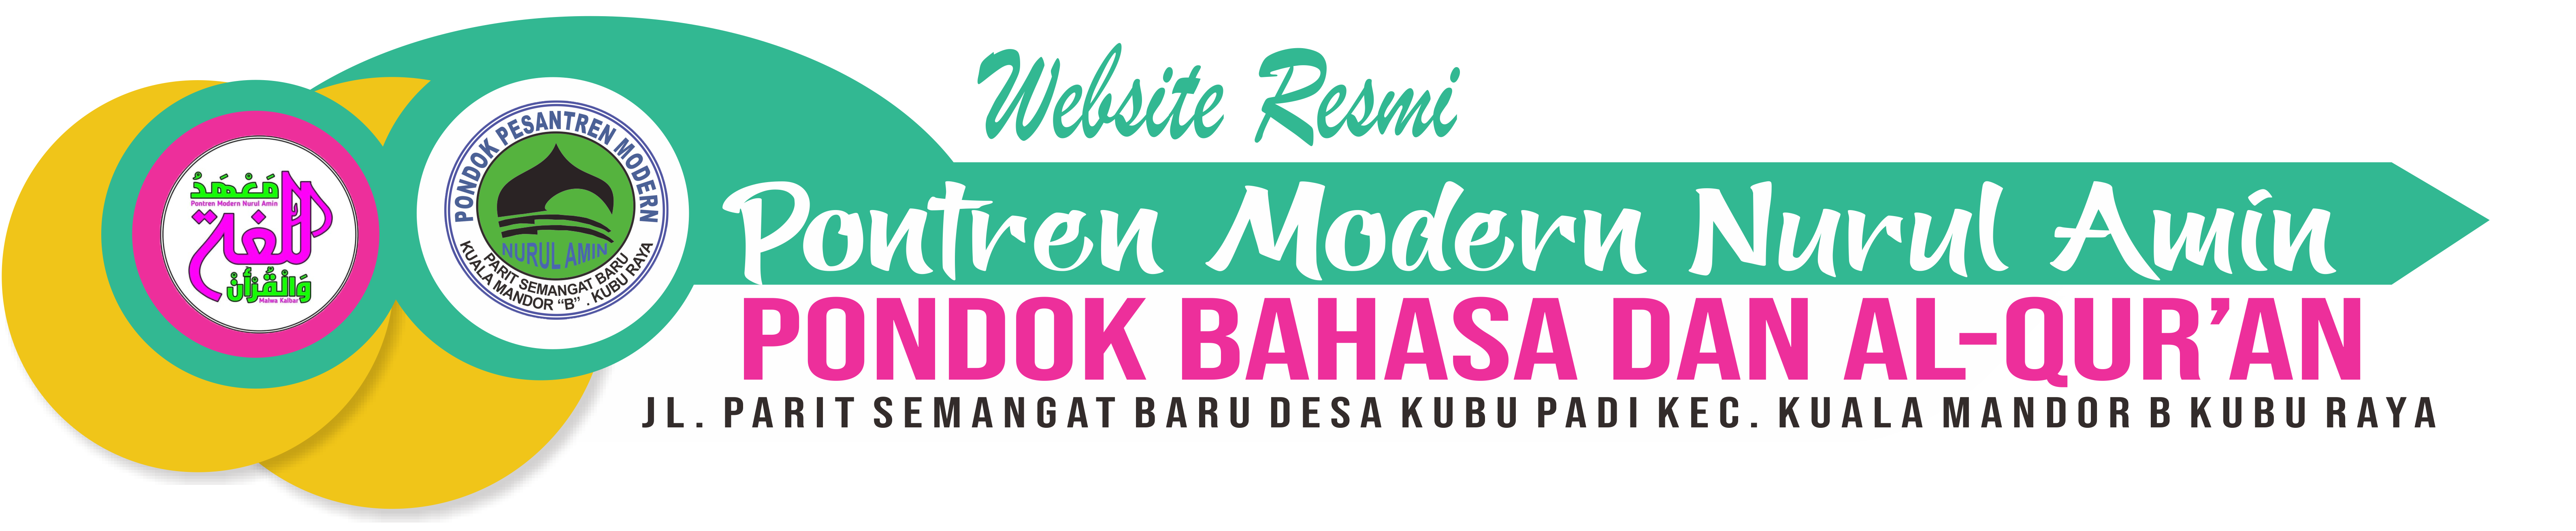 Pontren Modern Nurul Amin